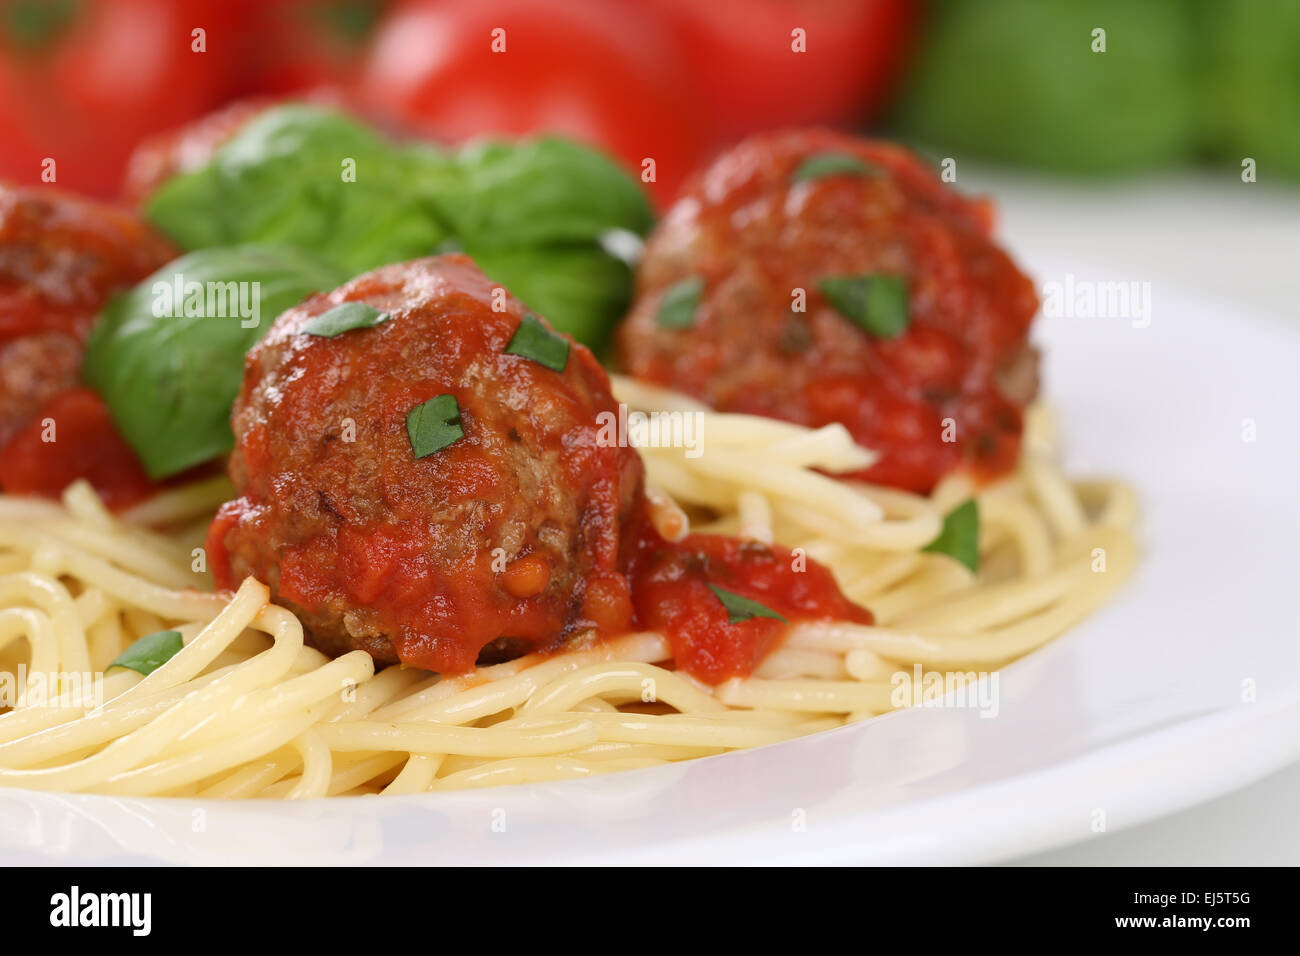 Spaghetti mit Fleischbällchen Nudeln Nudeln Essen auf einem Teller Stockfoto